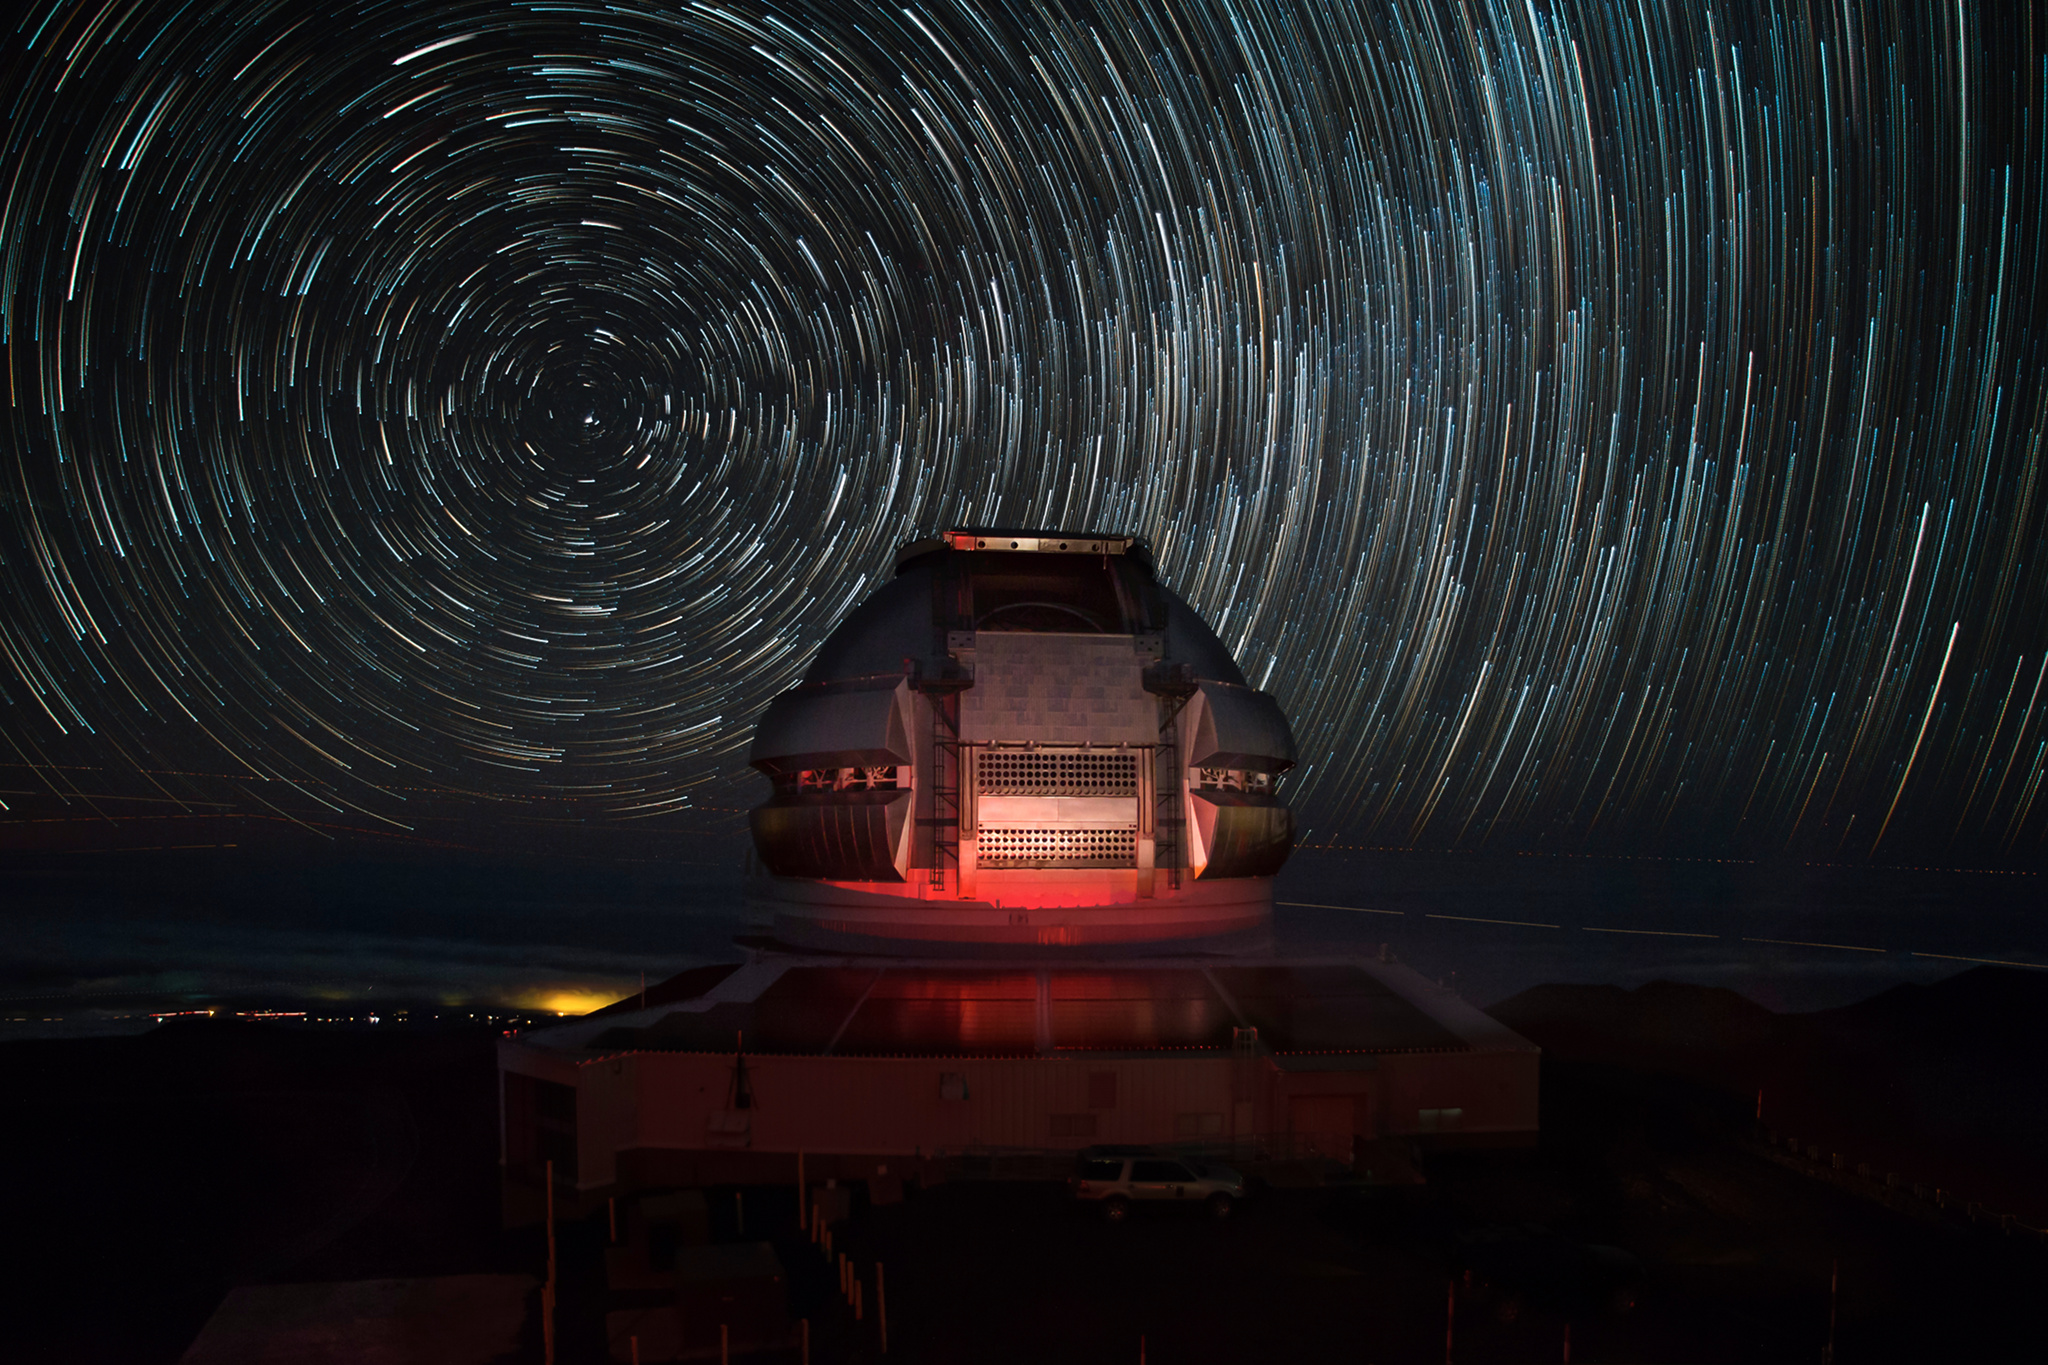 L’observatoire Gemini North, situé à Hawaï, permet d’observer, avec l'aide de son jumeau Gemini South, situé au Chili, la totalité de la voûte céleste. Équipé d’un télescope de 8,1 mètres de diamètre, il s’agit d’un des observatoires les plus performants du monde.  © Joy Pollard, Observatoire Gemini.